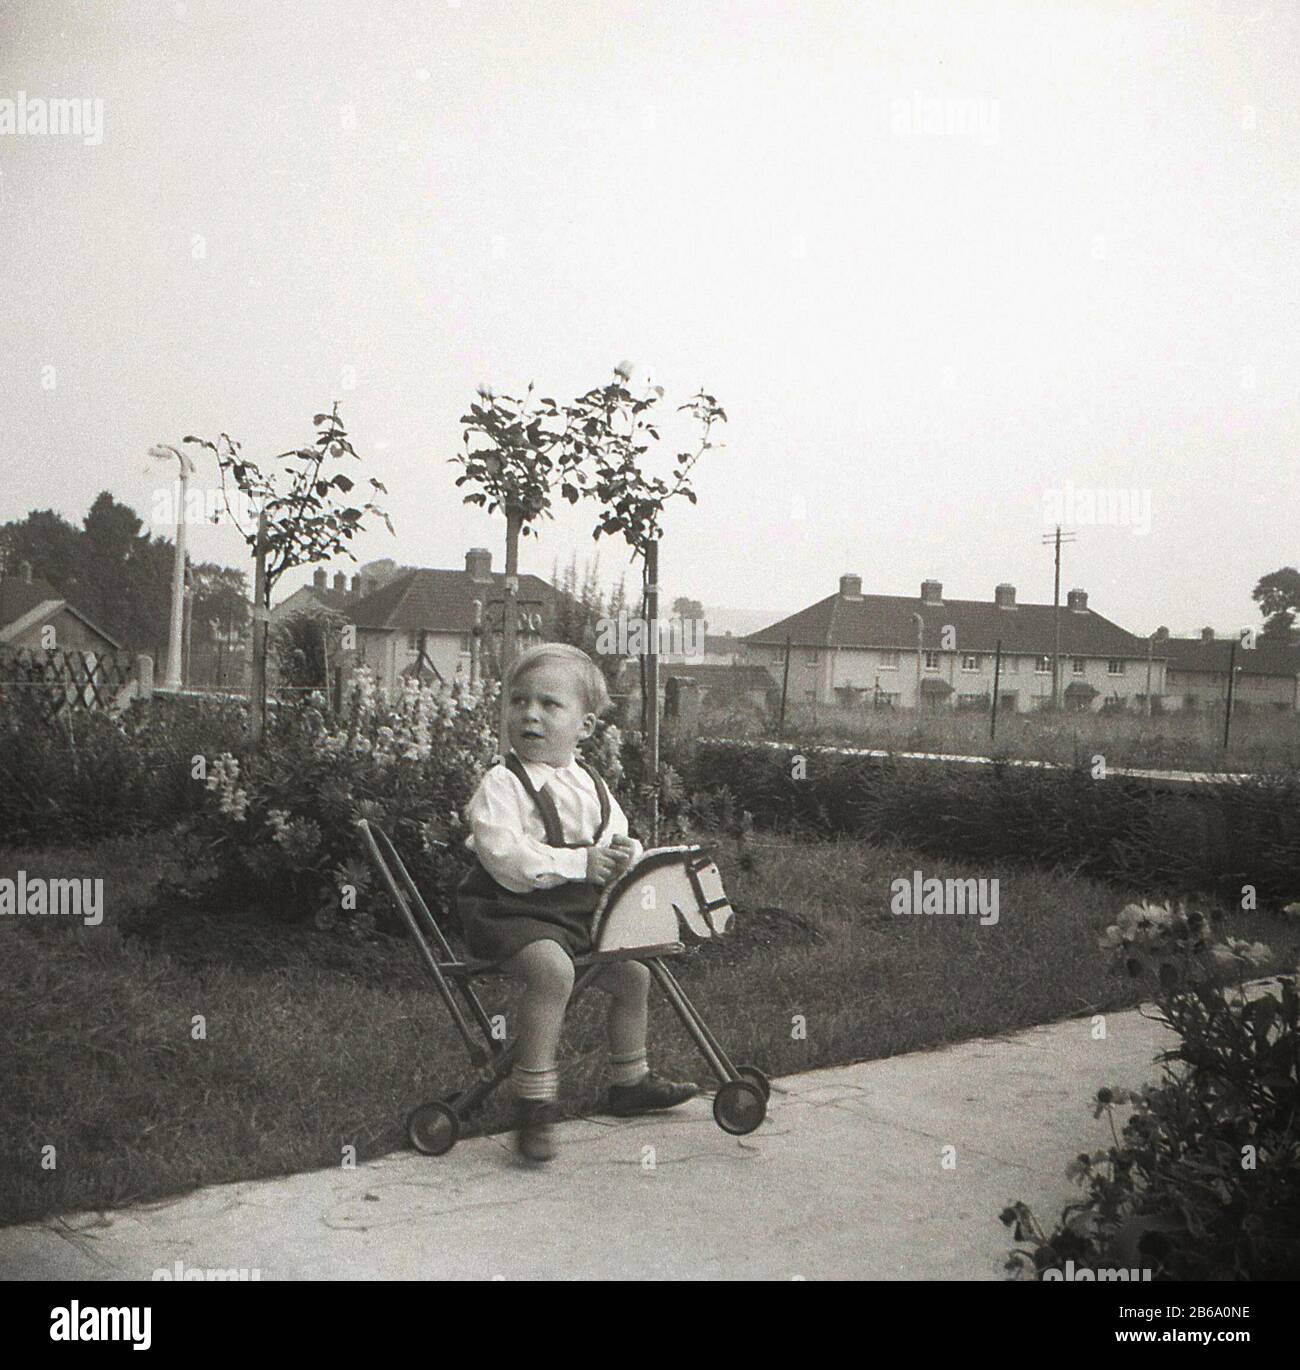 1950er Jahre, historischer, kleiner Junge auf einem Weg außerhalb eines Hauses, das auf einem 4-rädrigen Spielzeugpferd sitzt, England, Großbritannien. Stockfoto